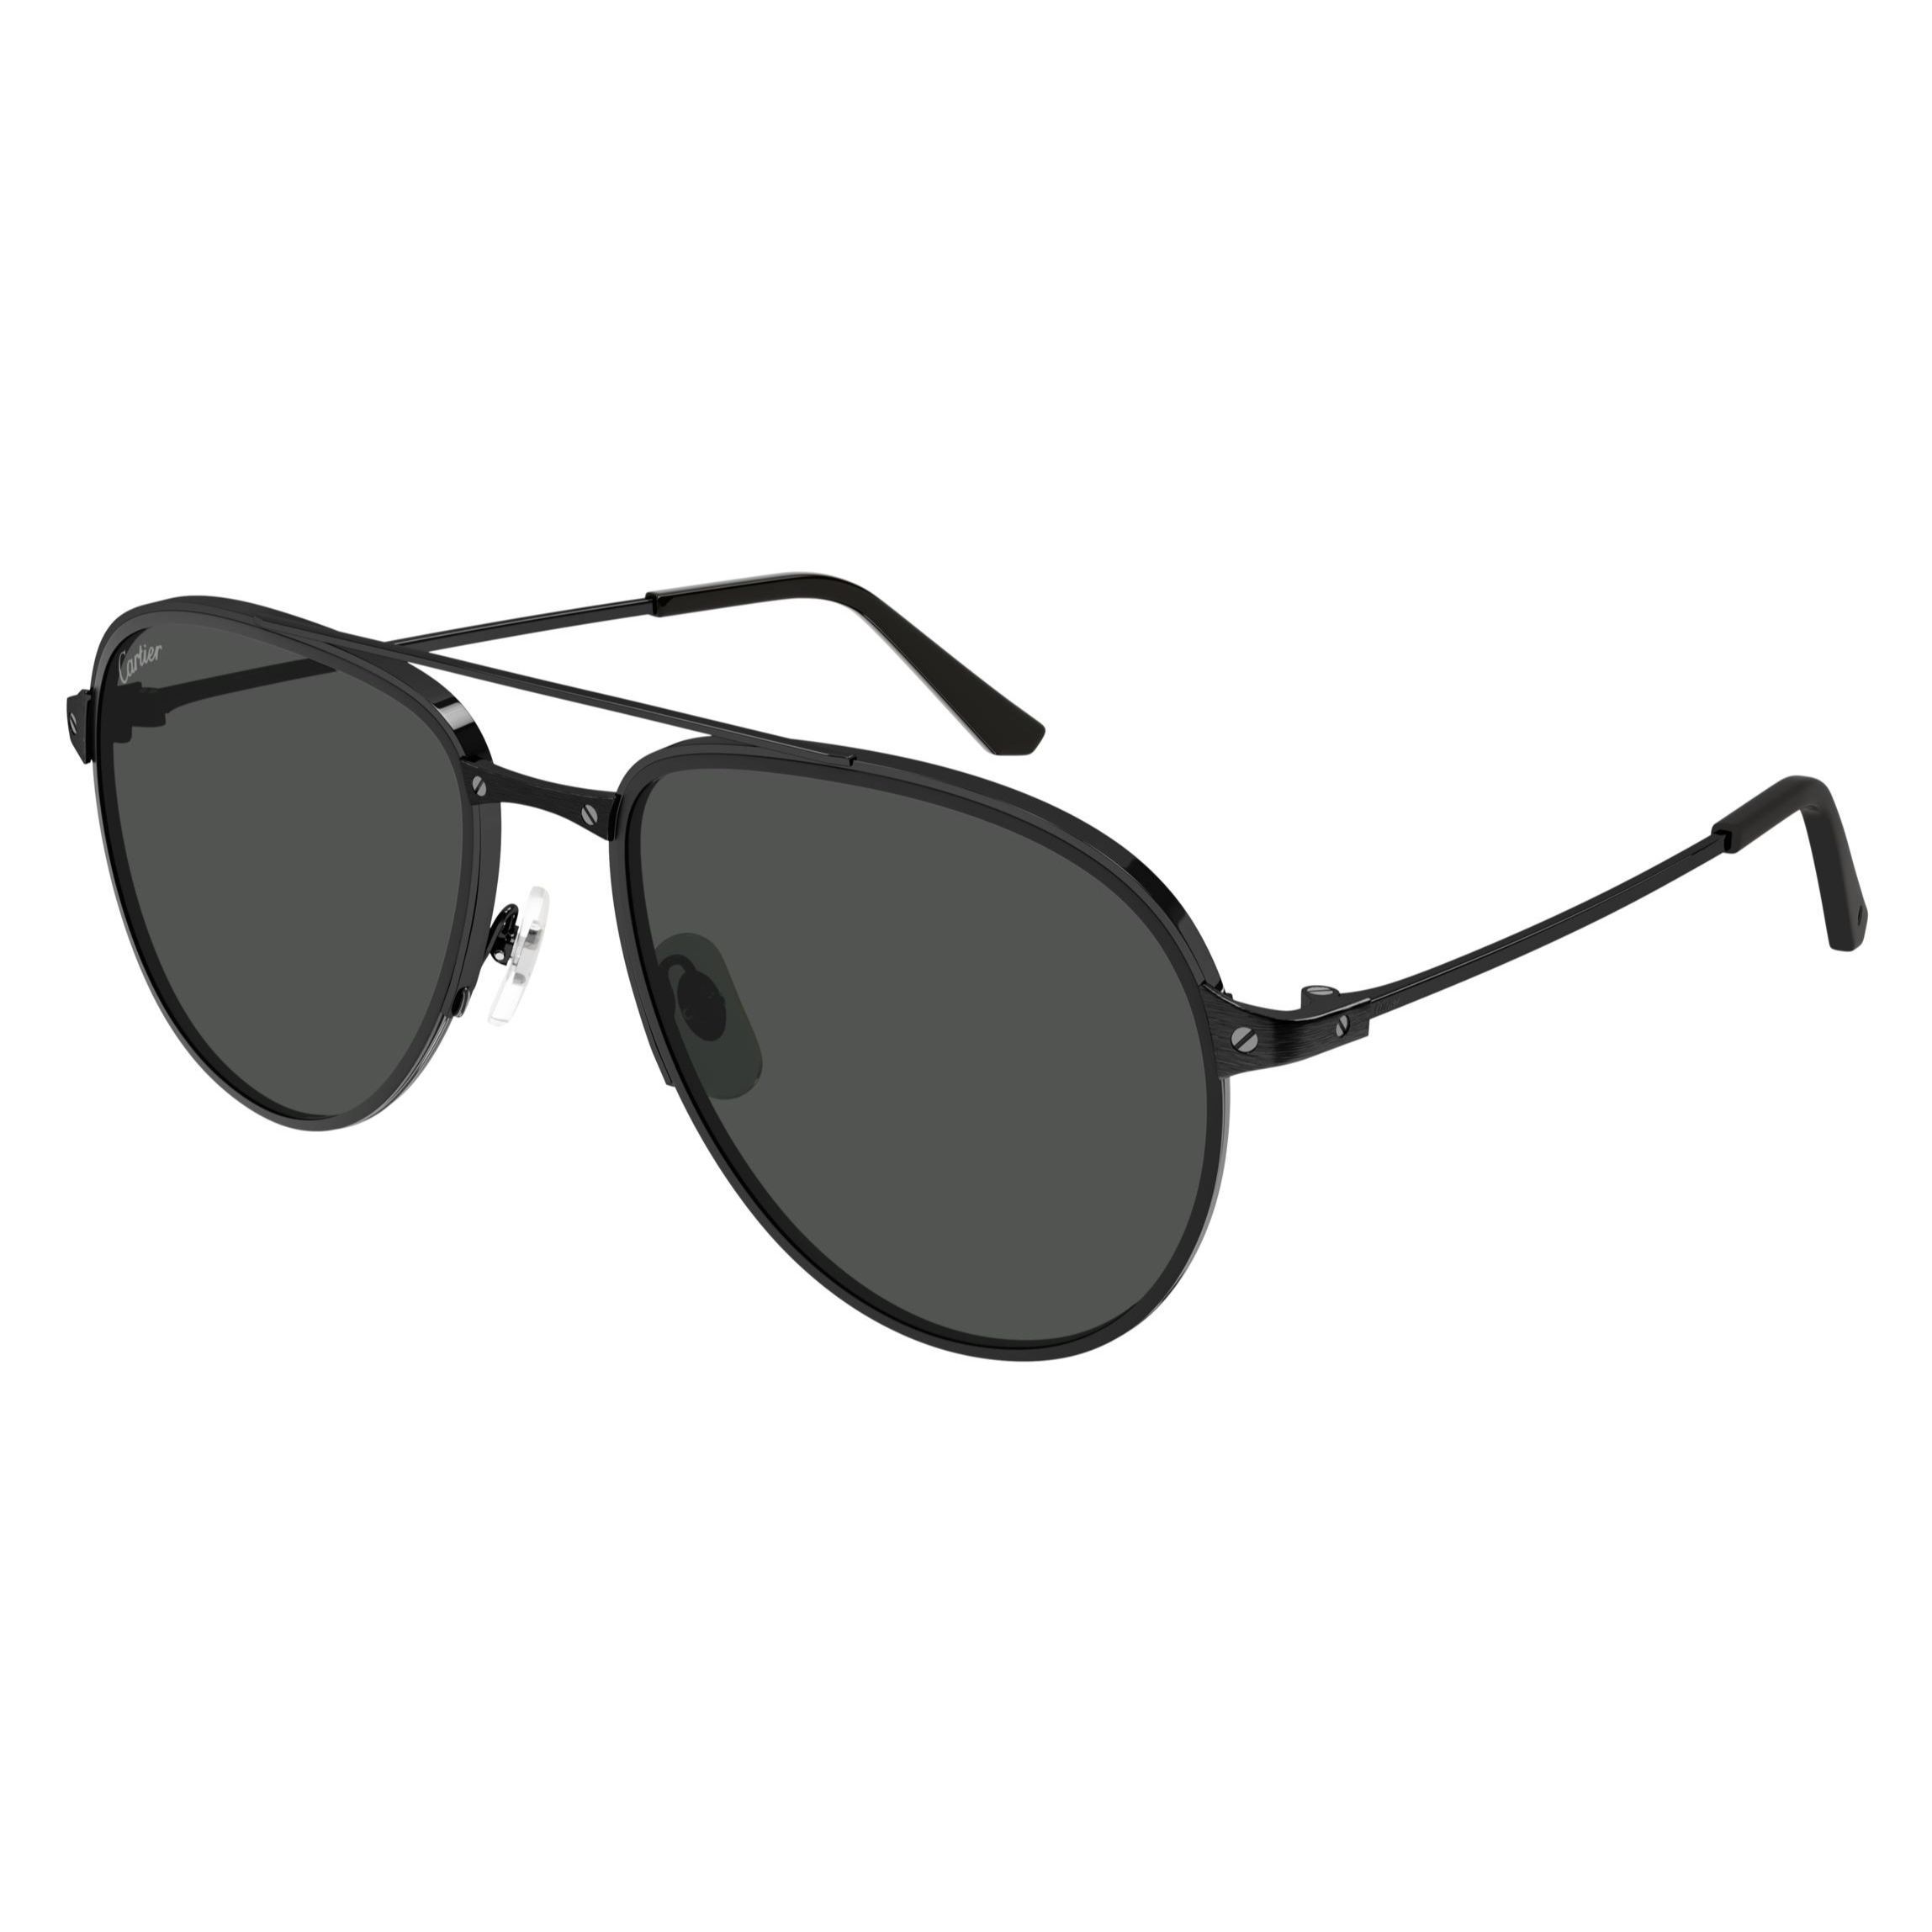 CT0325S Pilot Sunglasses 009 - size 59